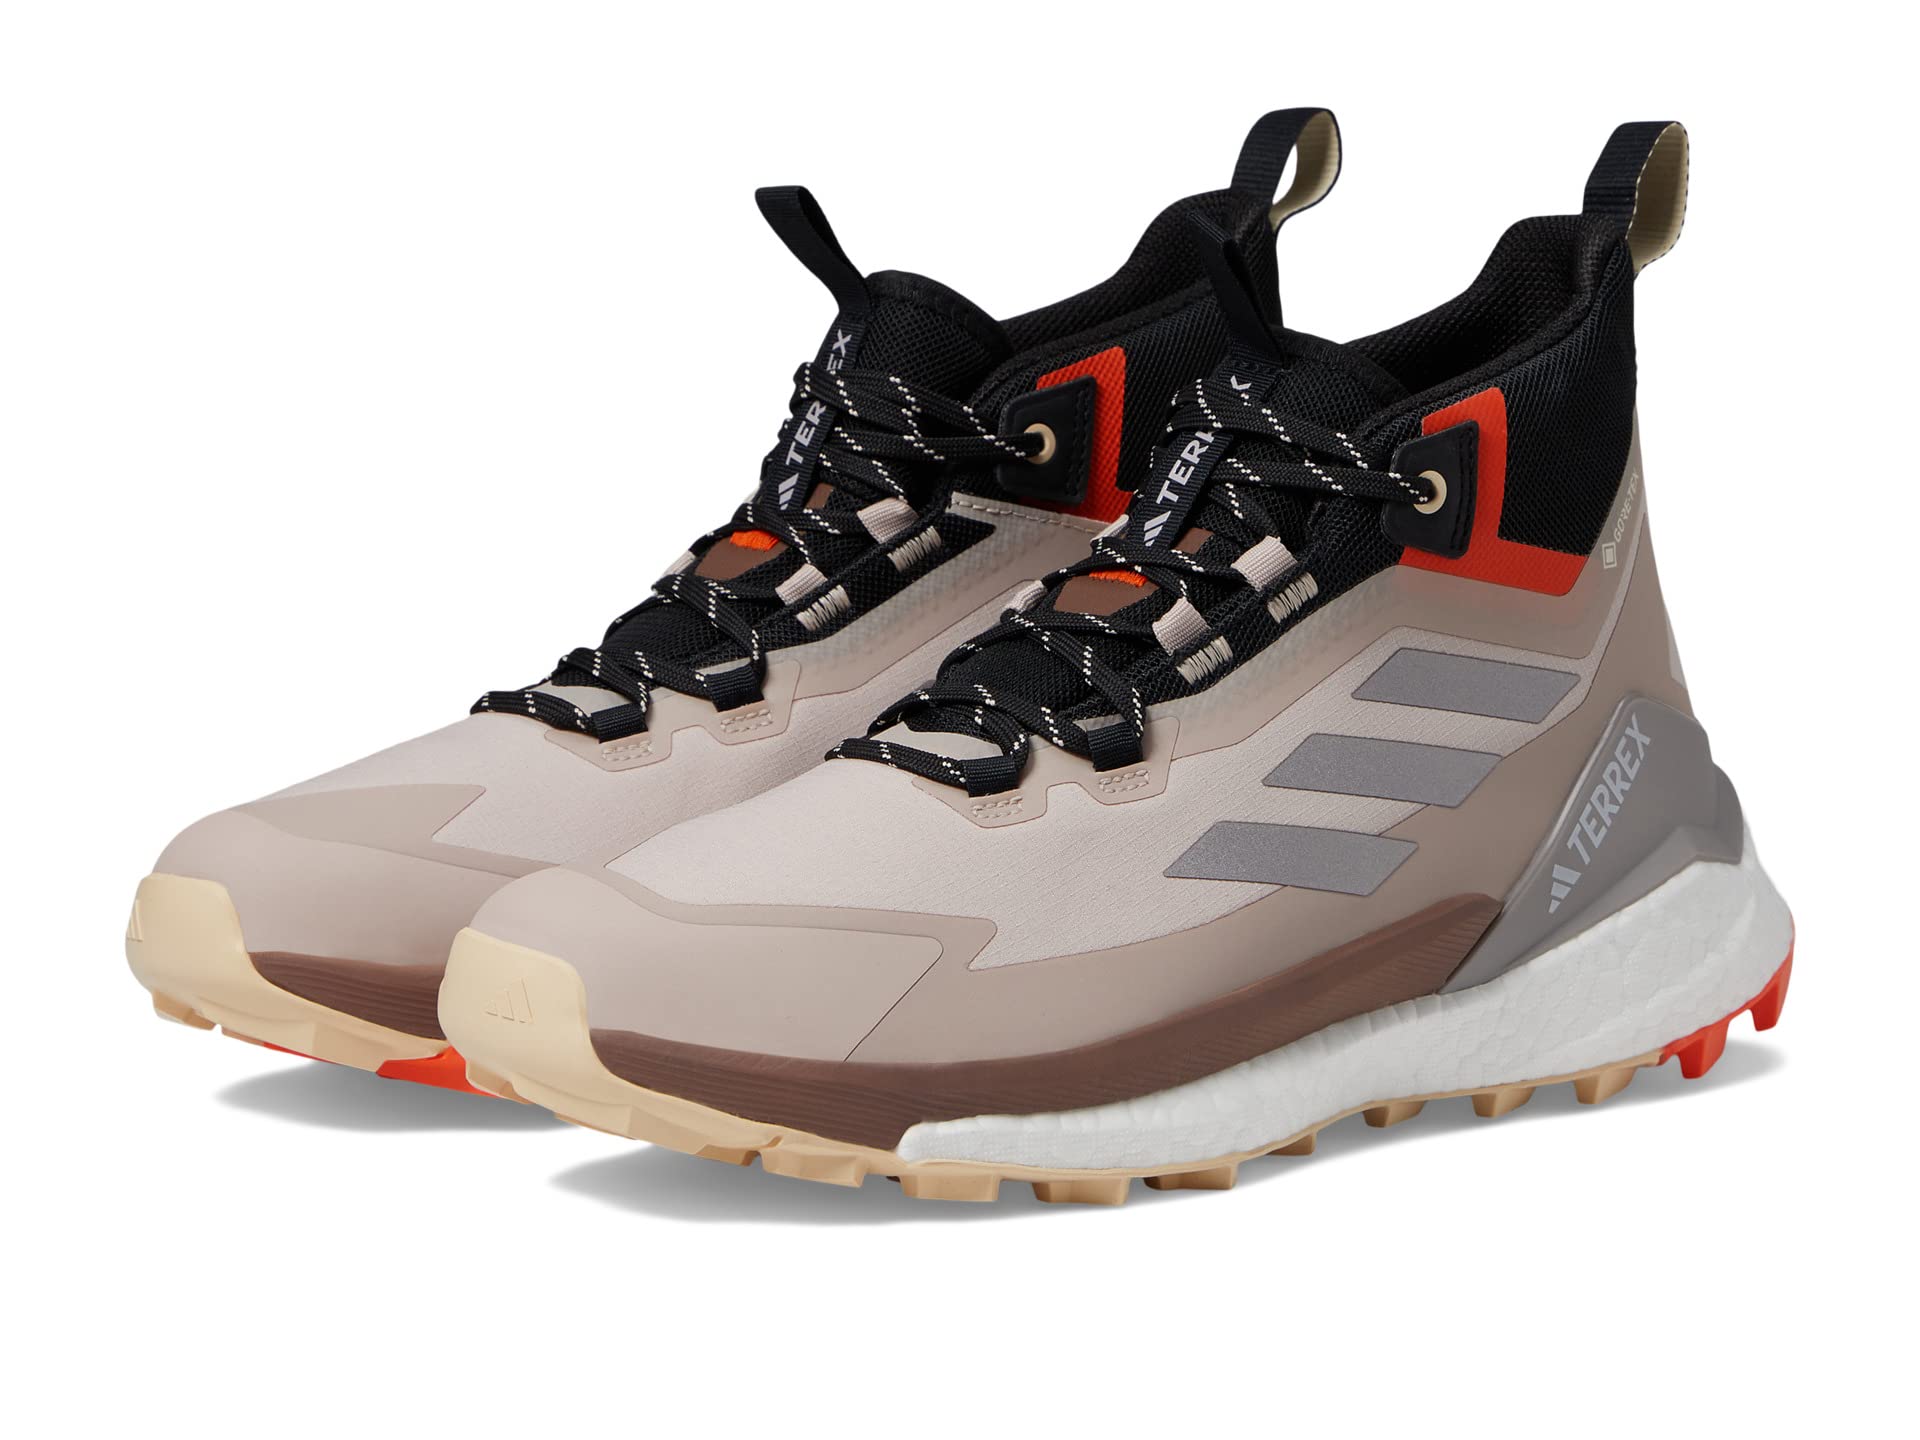 Ботинки для активного отдыха Adidas Terrex Free Hiker 2 GTX для мужчин Adidas